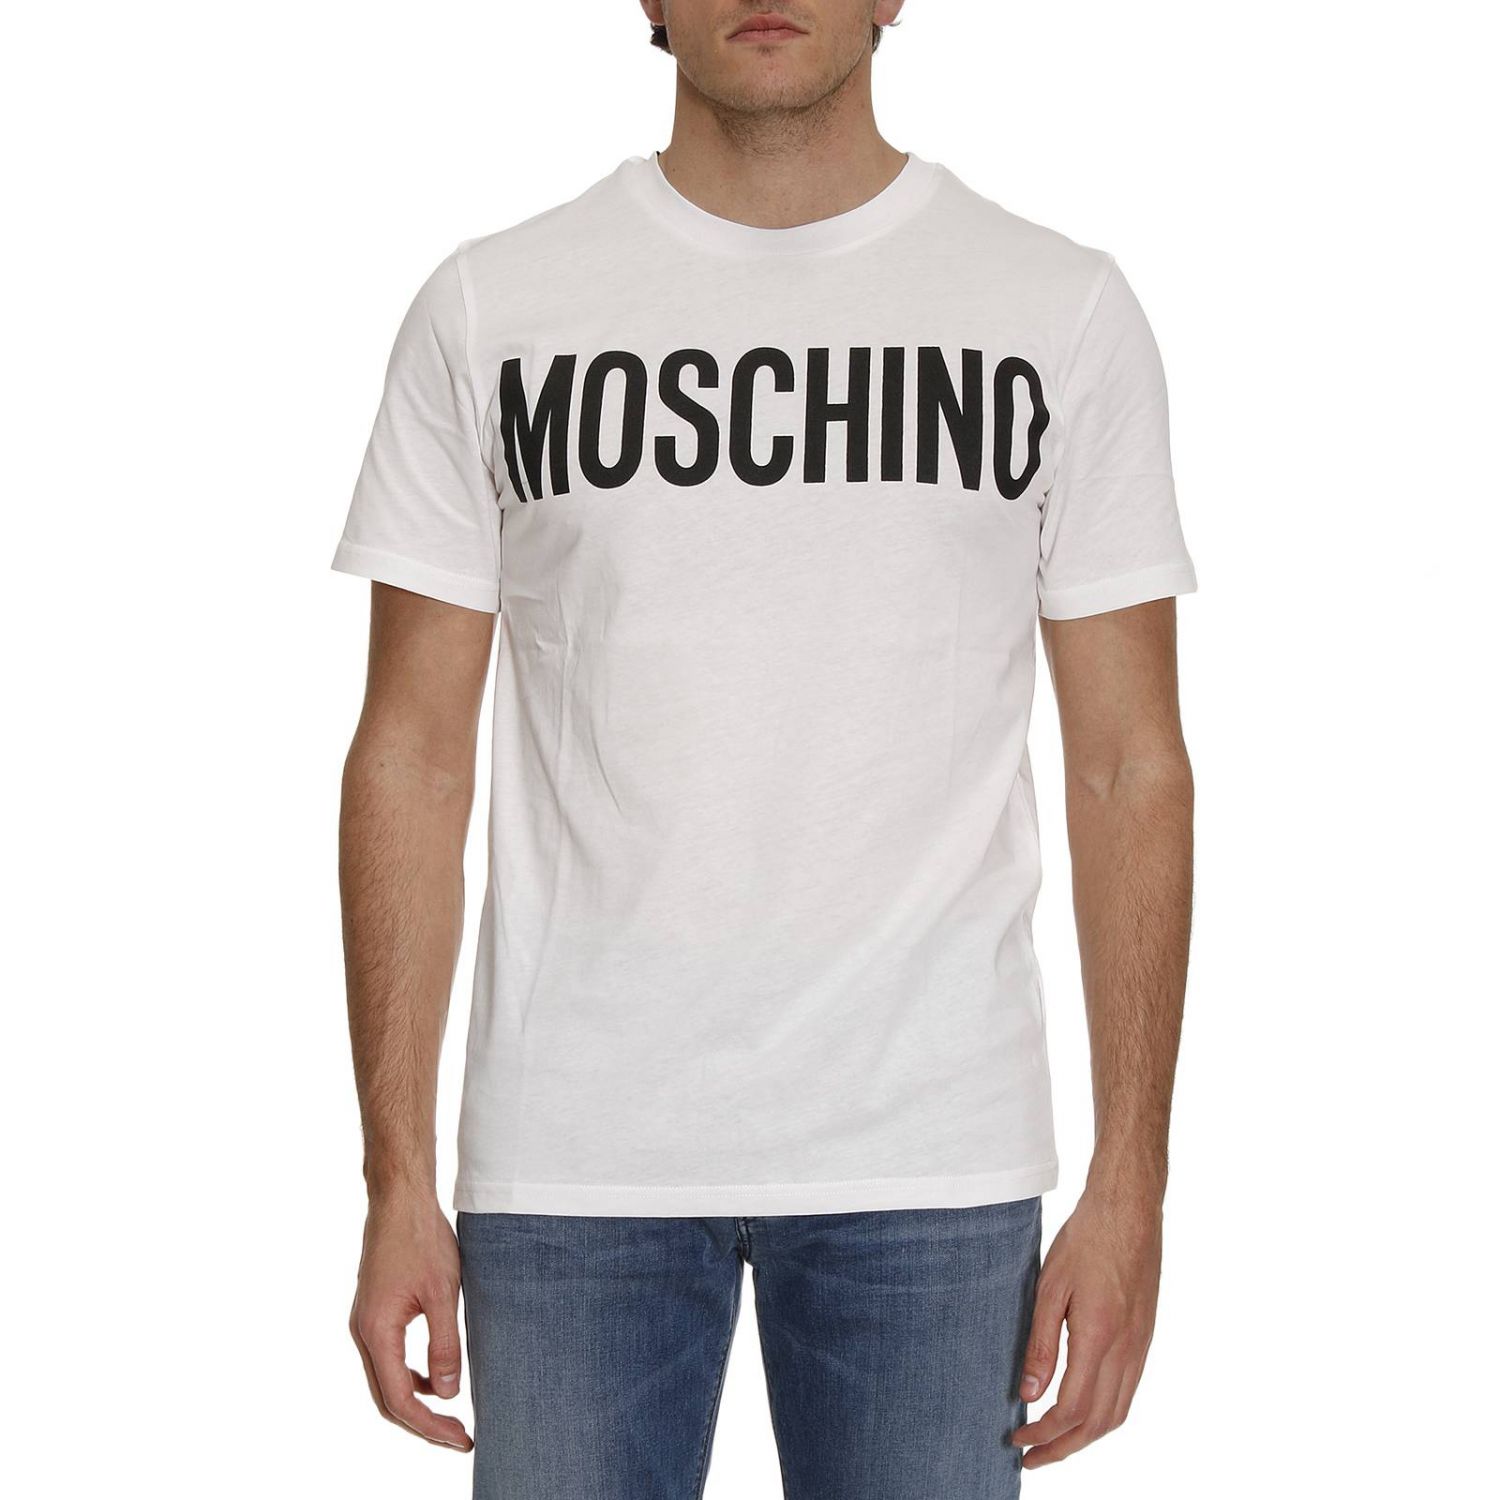 moschino shirt men's